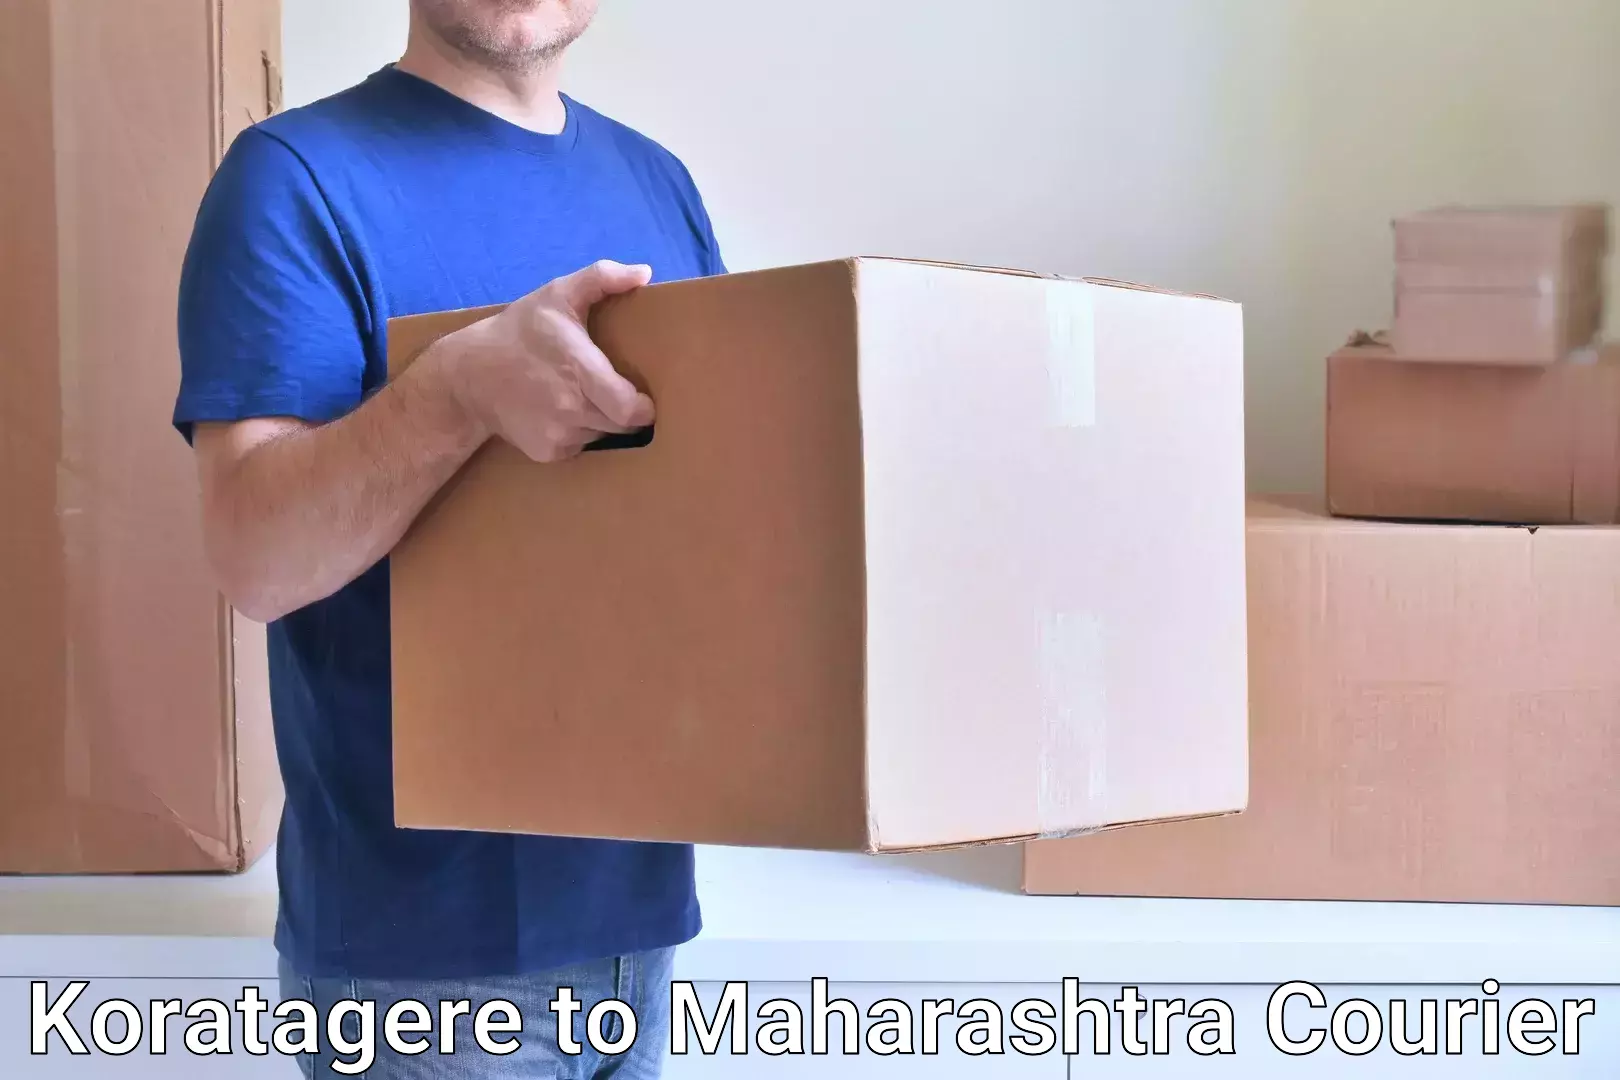 Streamlined logistics management Koratagere to Maharashtra